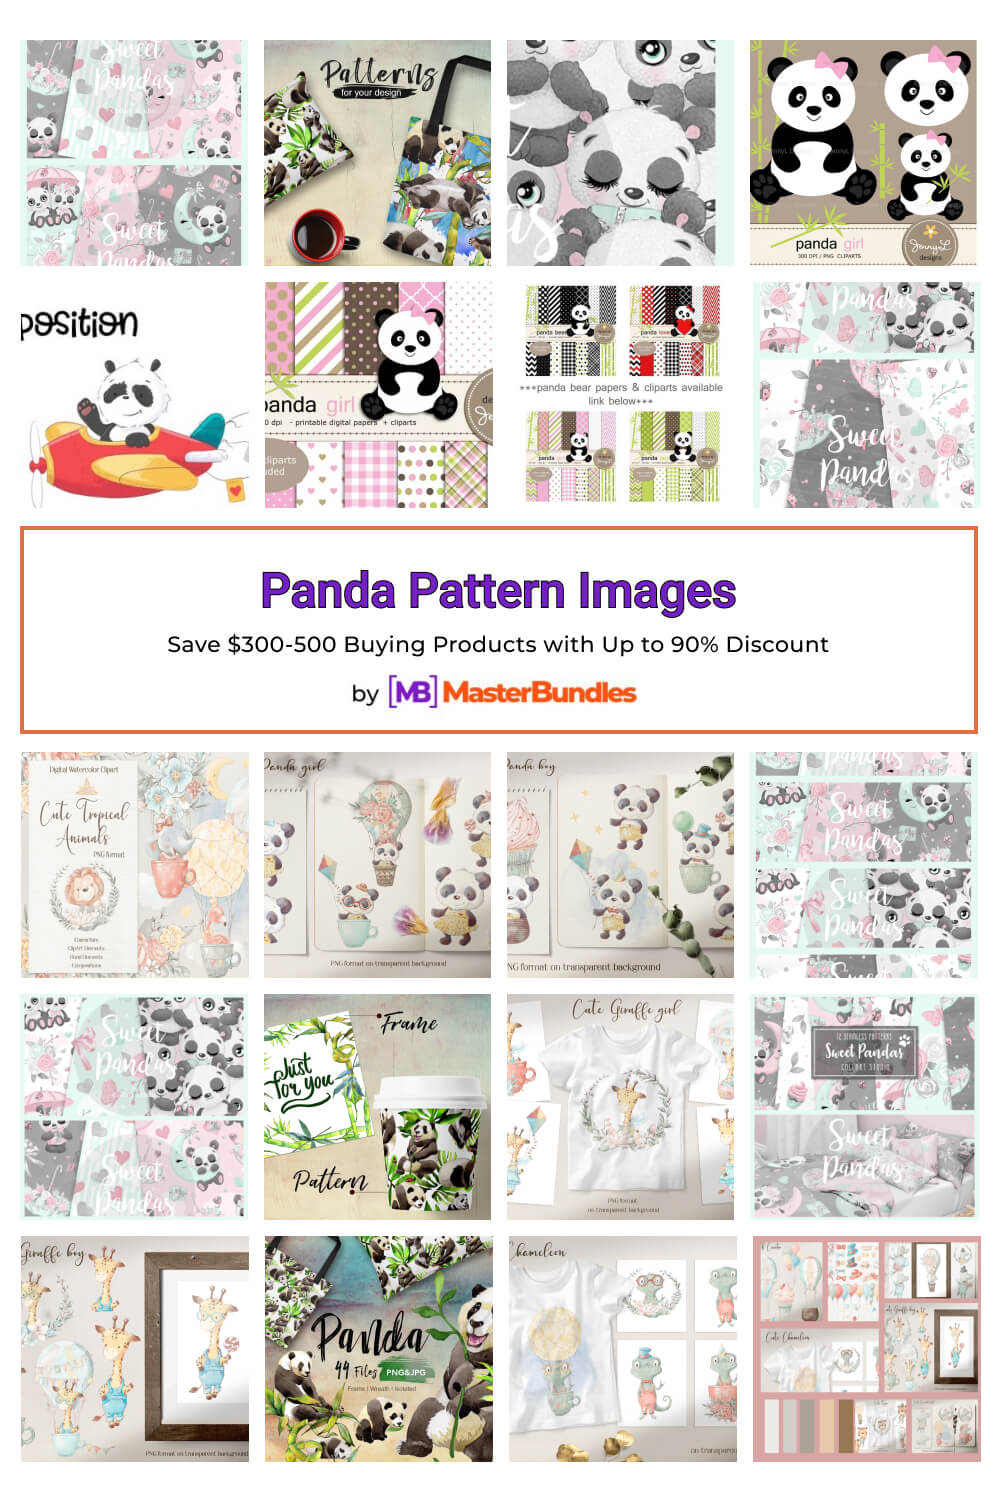 panda pattern images pinterest image.